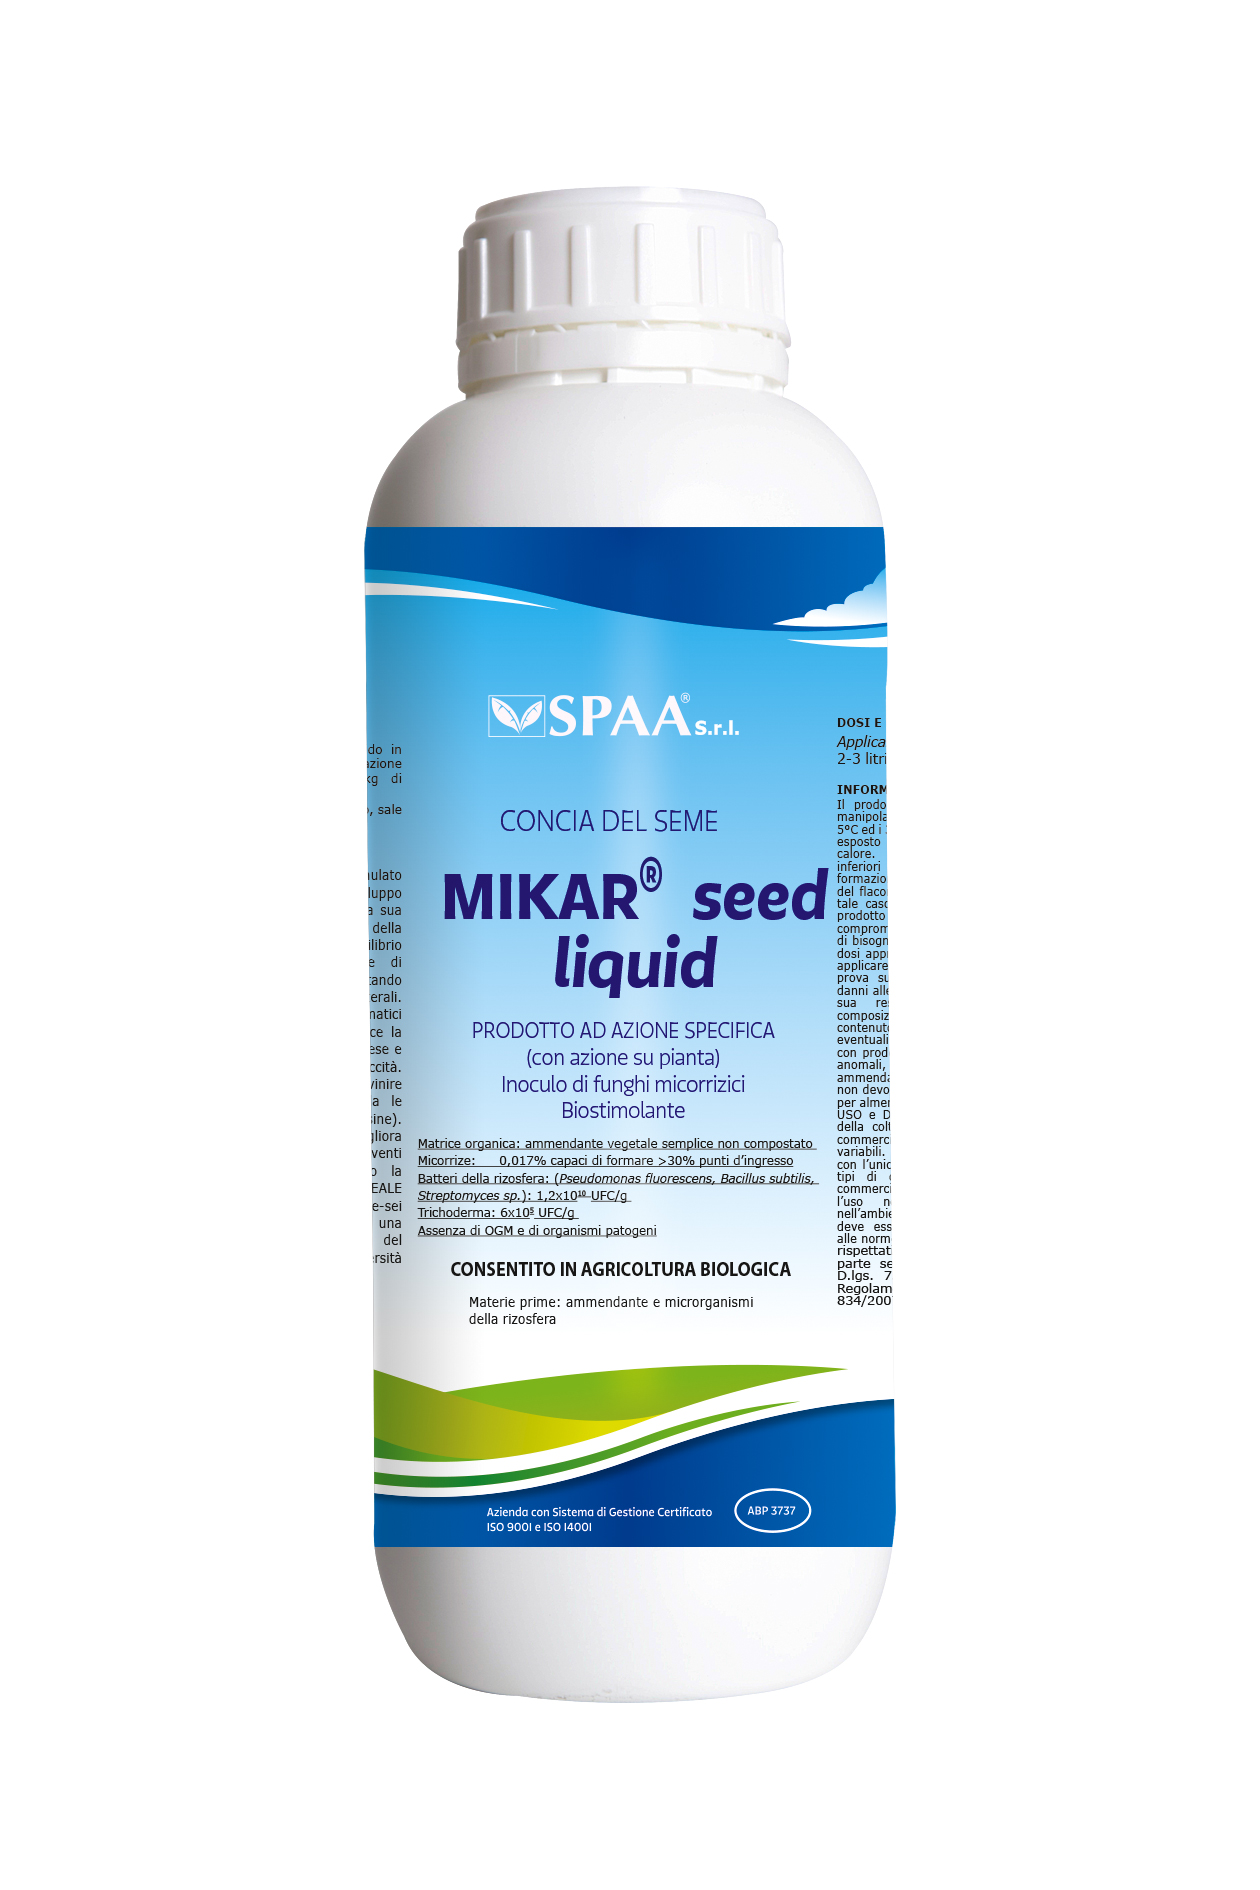 MIKAR Seed Liquid